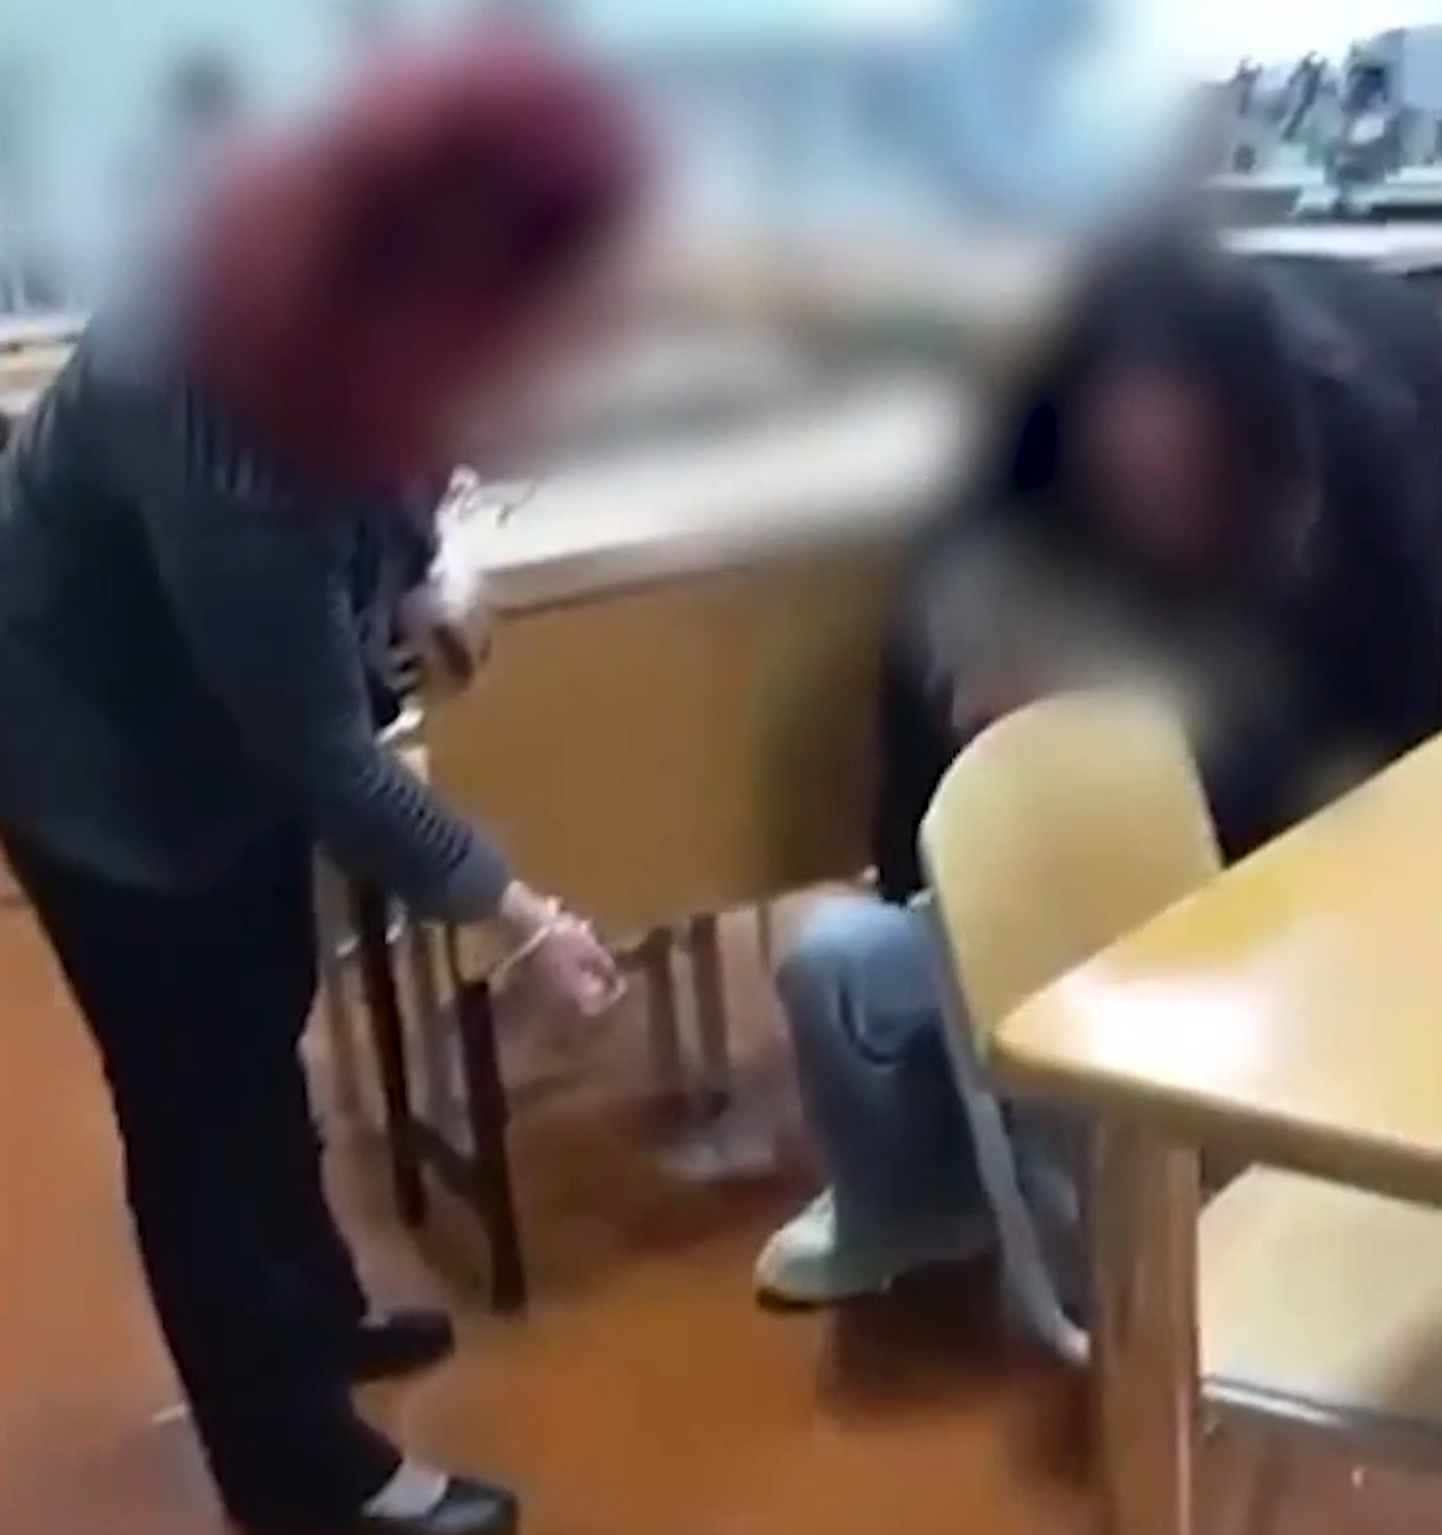 Pēc konflikta ar skolnieci Daugavpilī no darba atlaistas divas skolotājas; dome sākusi dienesta pārbaudi